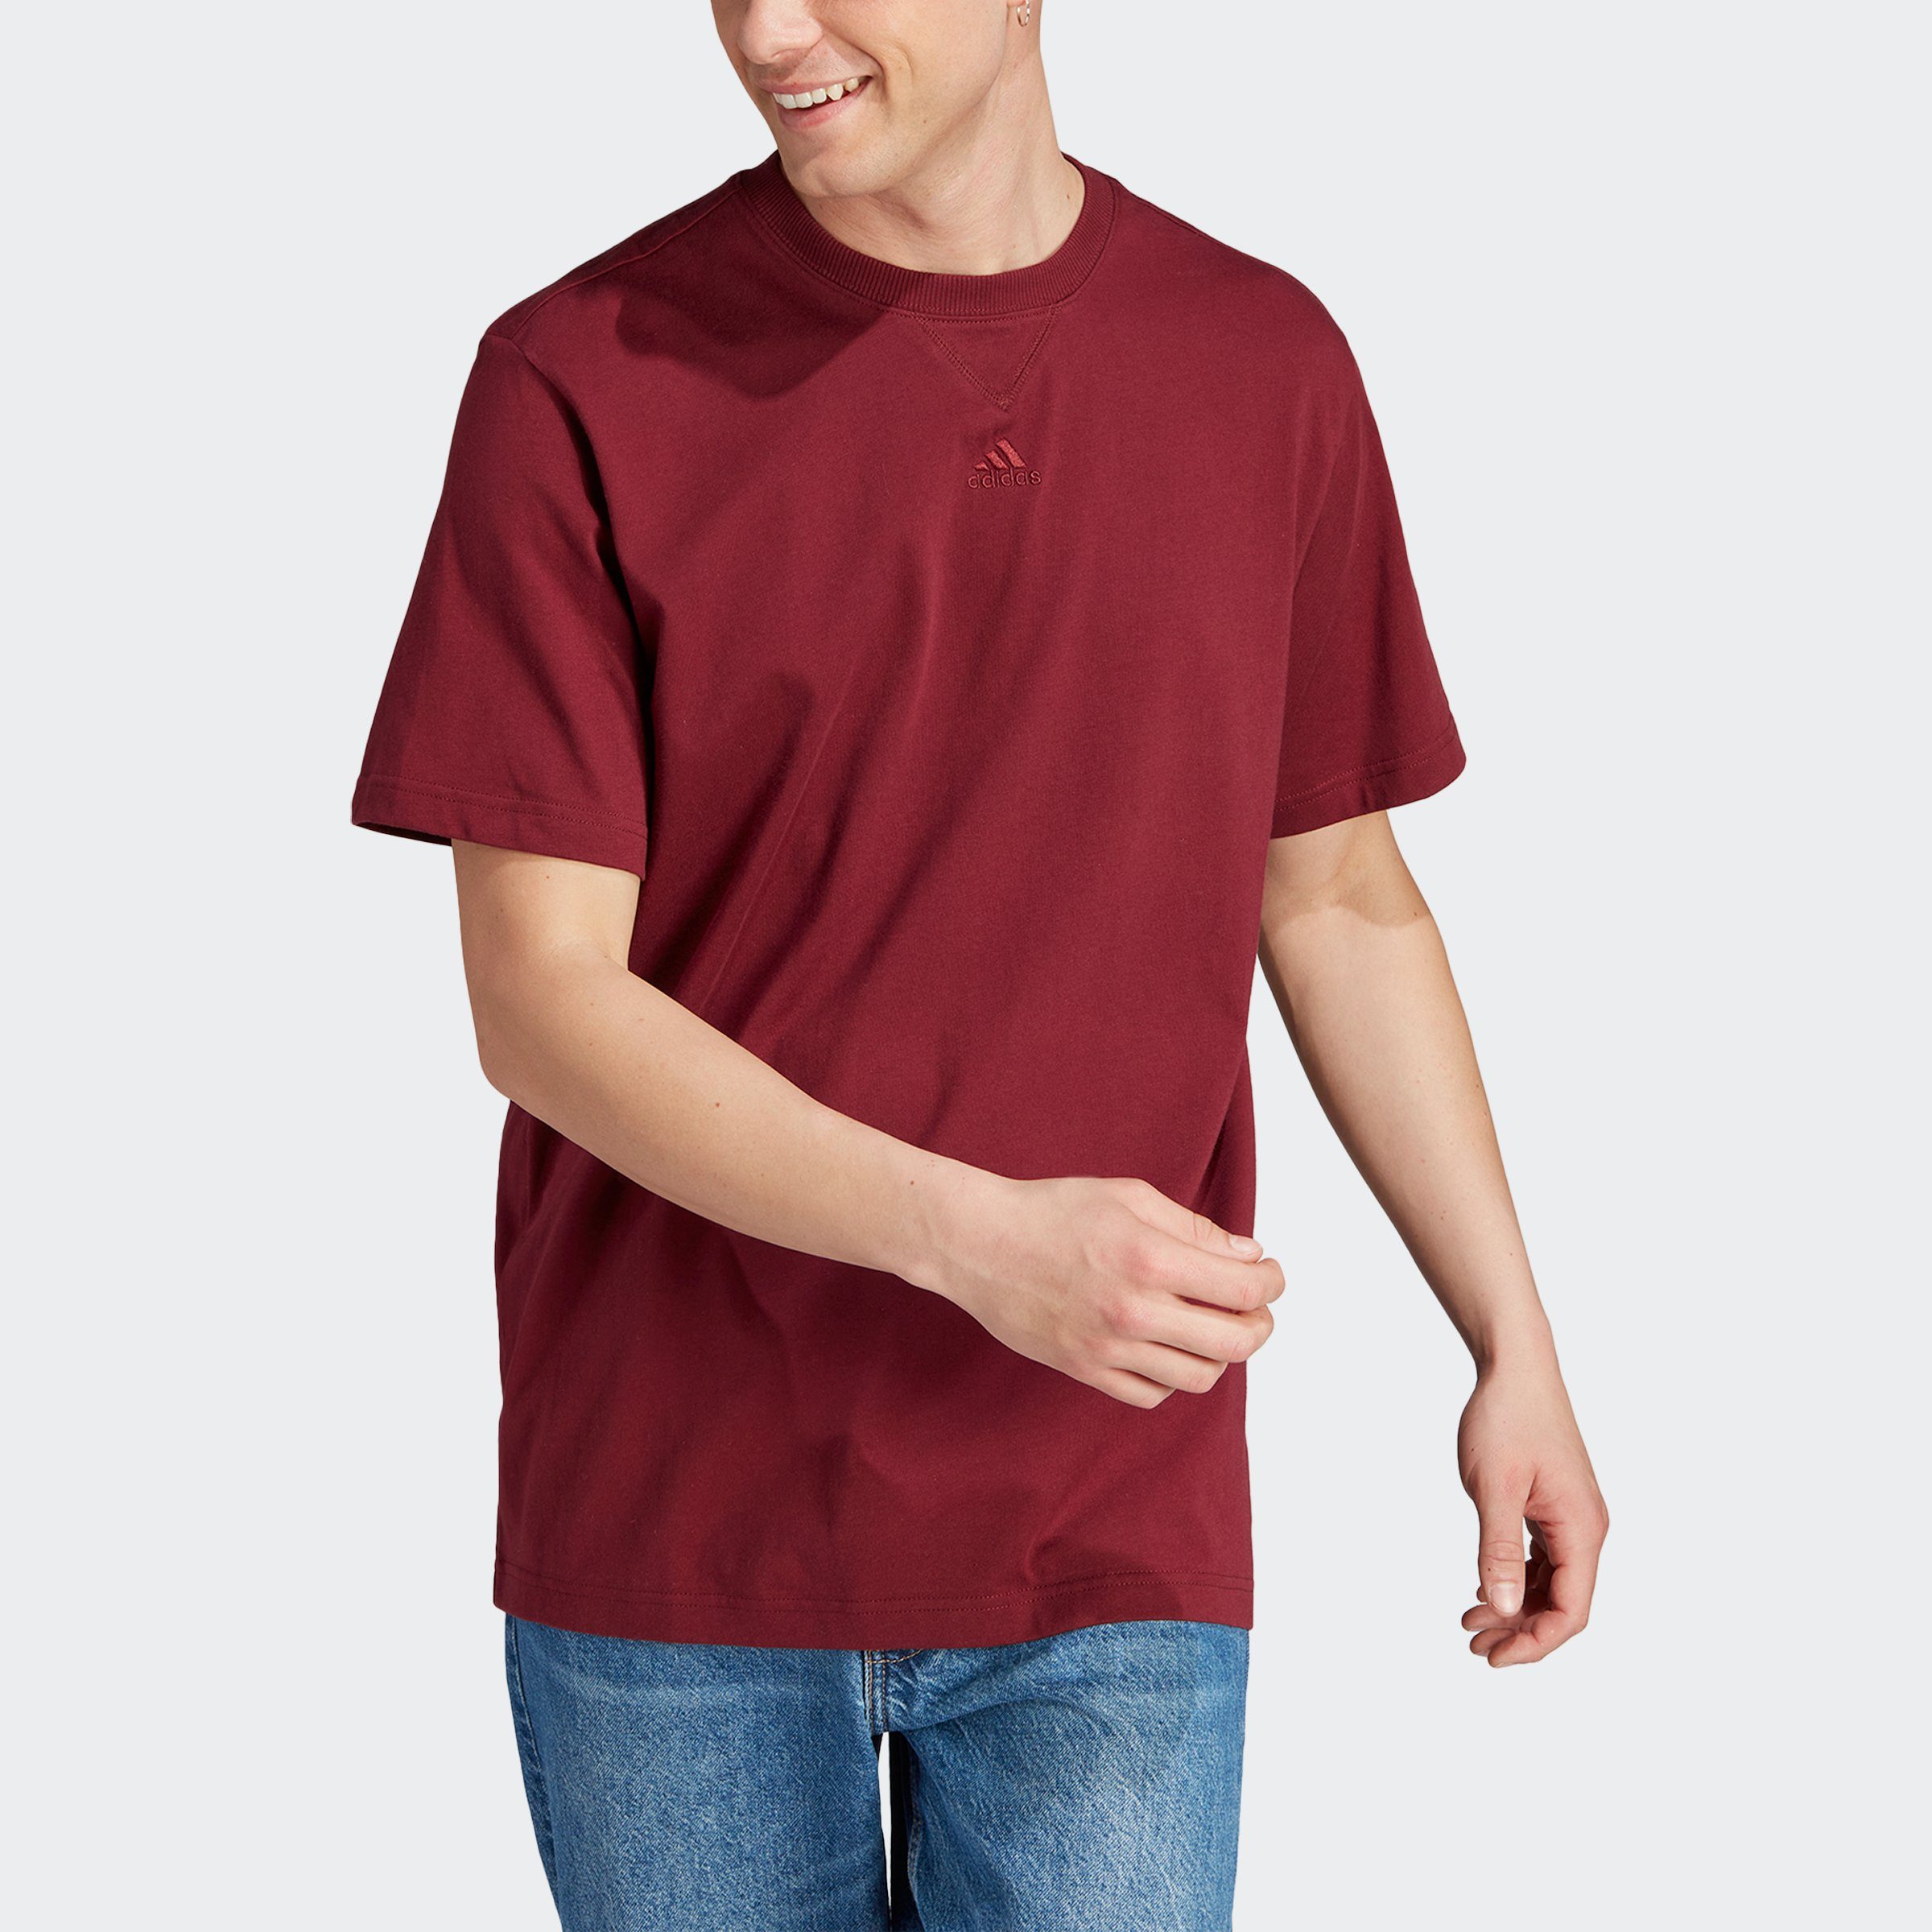 M ALL Shadow Sportswear adidas Red T T-Shirt SZN